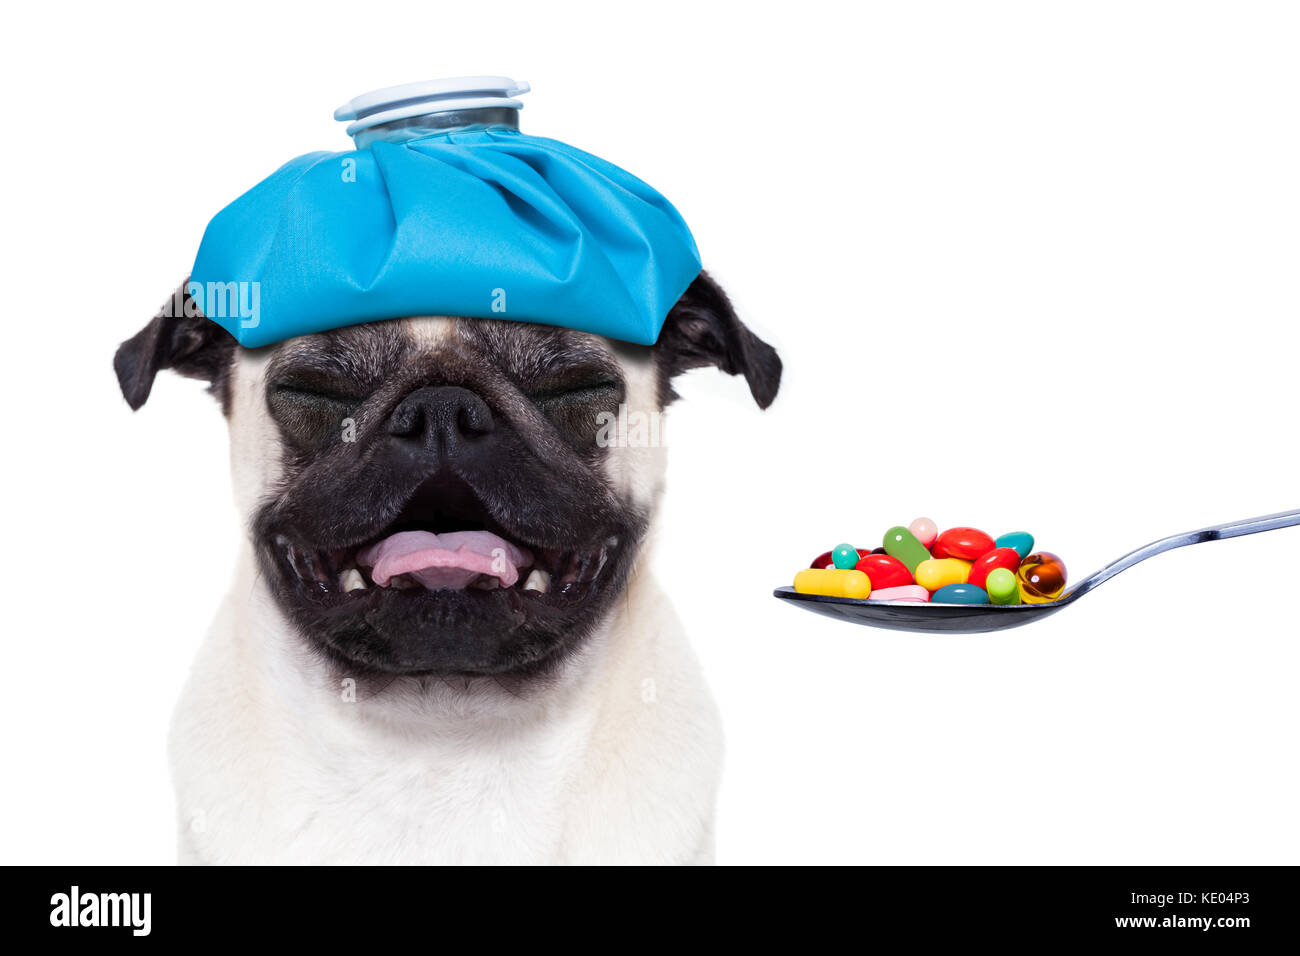 Mops Hund mit Kopfschmerzen und Kater mit eisbeutel oder Ice Pack auf Kopf,  leiden und weinen, Einnahme von Tabletten oder Medizin, auf weißem  Hintergrund Stockfotografie - Alamy